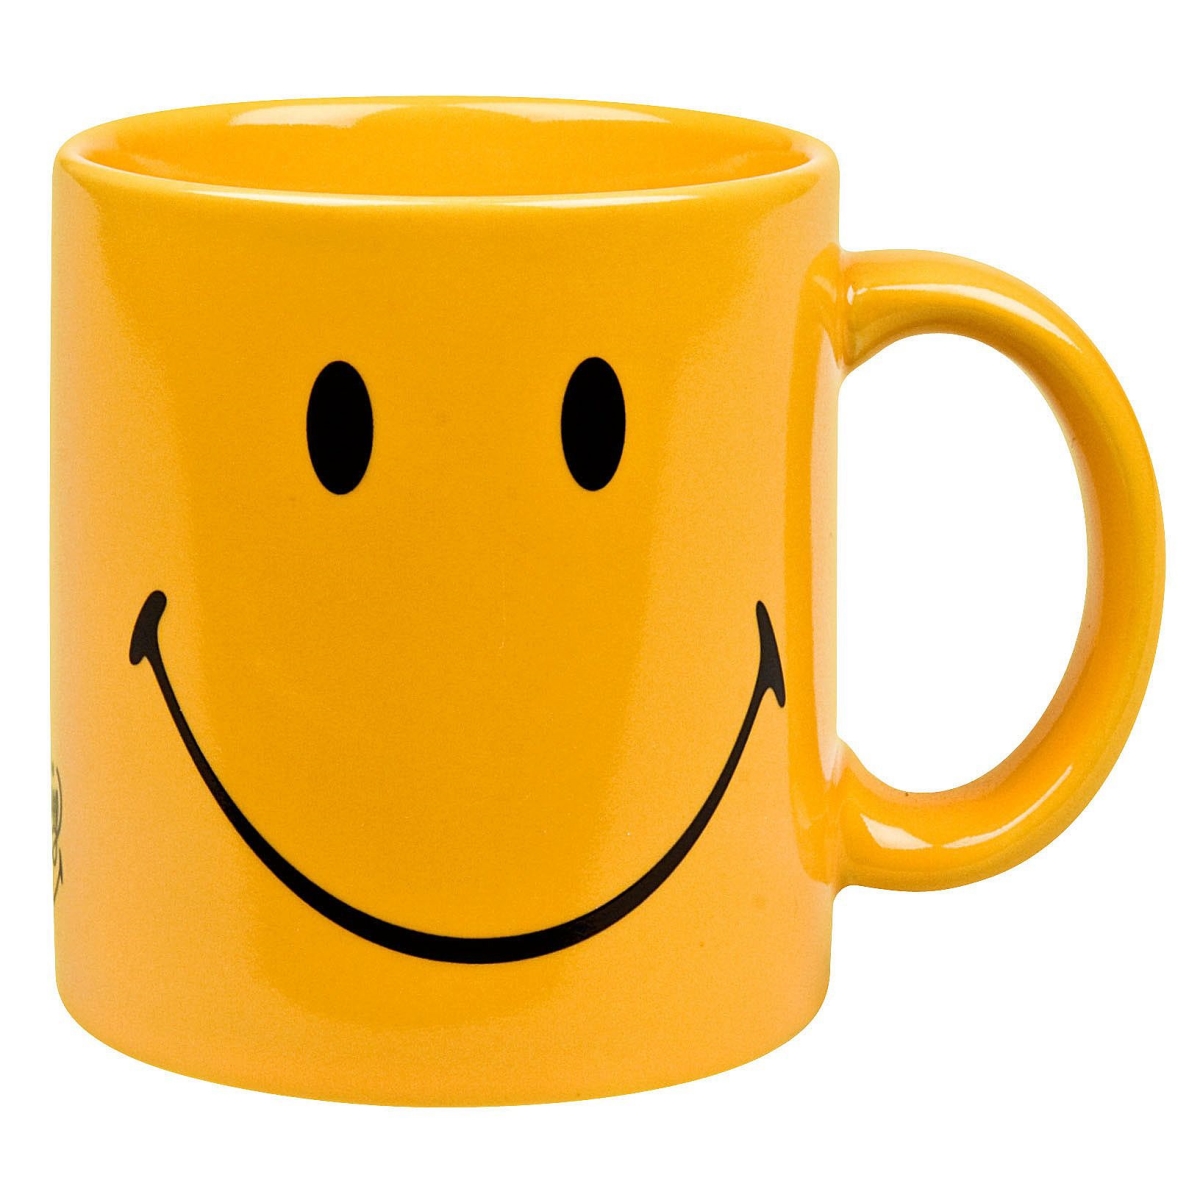 01 S 6mg 1225 Smiley Yellow Mugs - Set Of 6